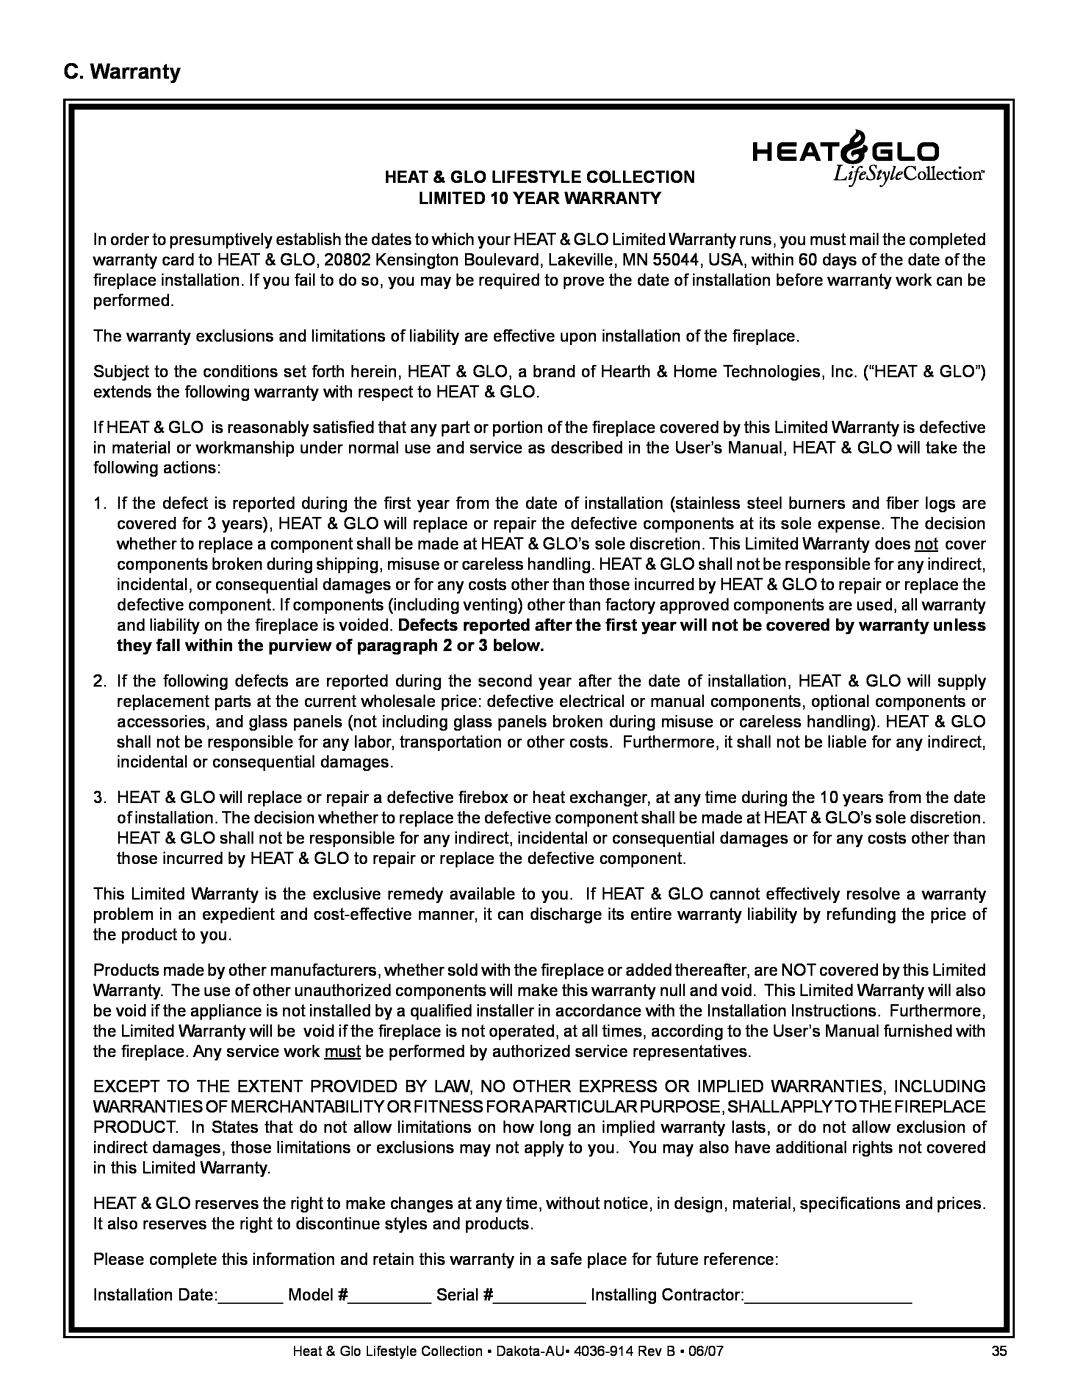 Heat & Glo LifeStyle DAKOTA-AU manual C. Warranty, Heat & Glo Lifestyle Collection, LIMITED 10 YEAR WARRANTY 